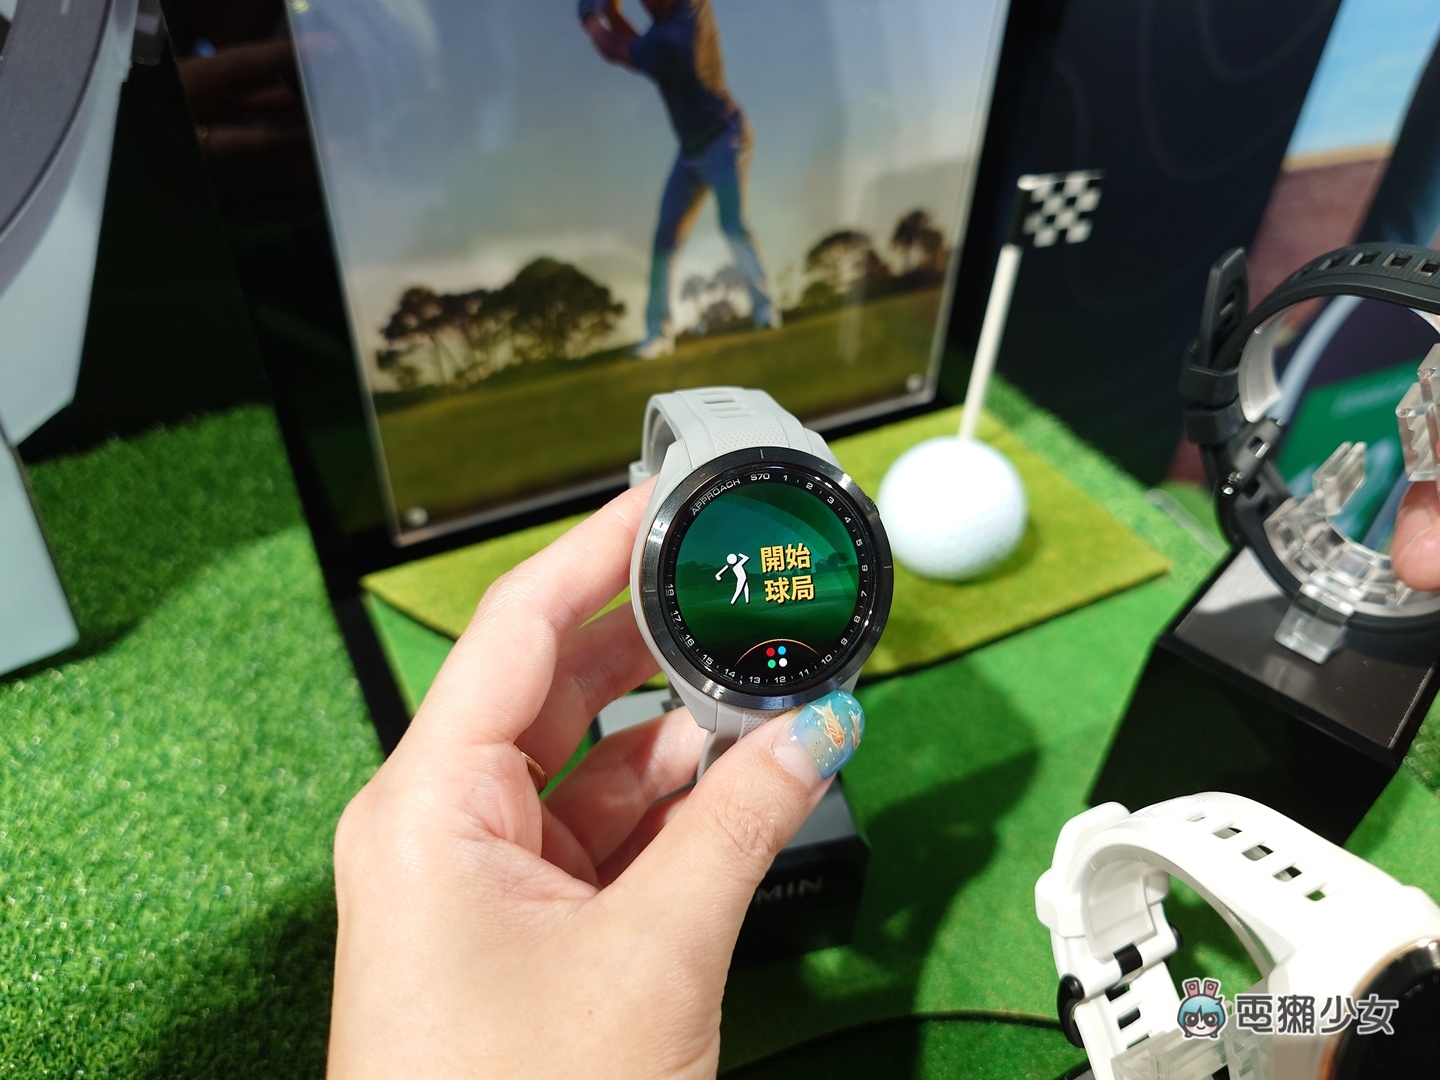 出門｜Garmin 推出高爾夫球 GPS 腕錶 Approach S70，世界球后曾雅妮現身配戴